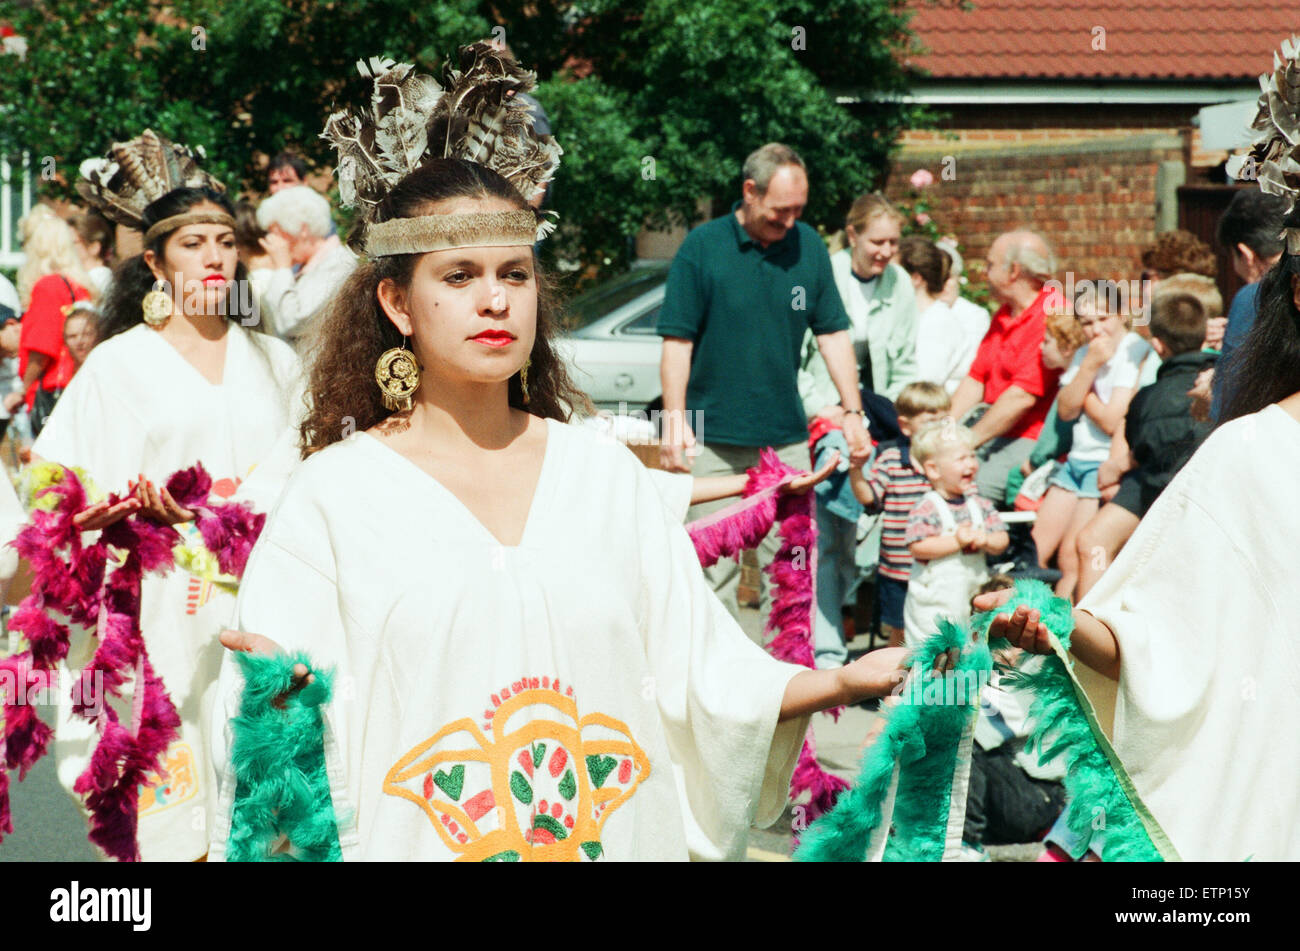 Festival du Folklore 1994 Billingham, Festival International de Folklore du monde de la danse. 16 août 1994. Banque D'Images